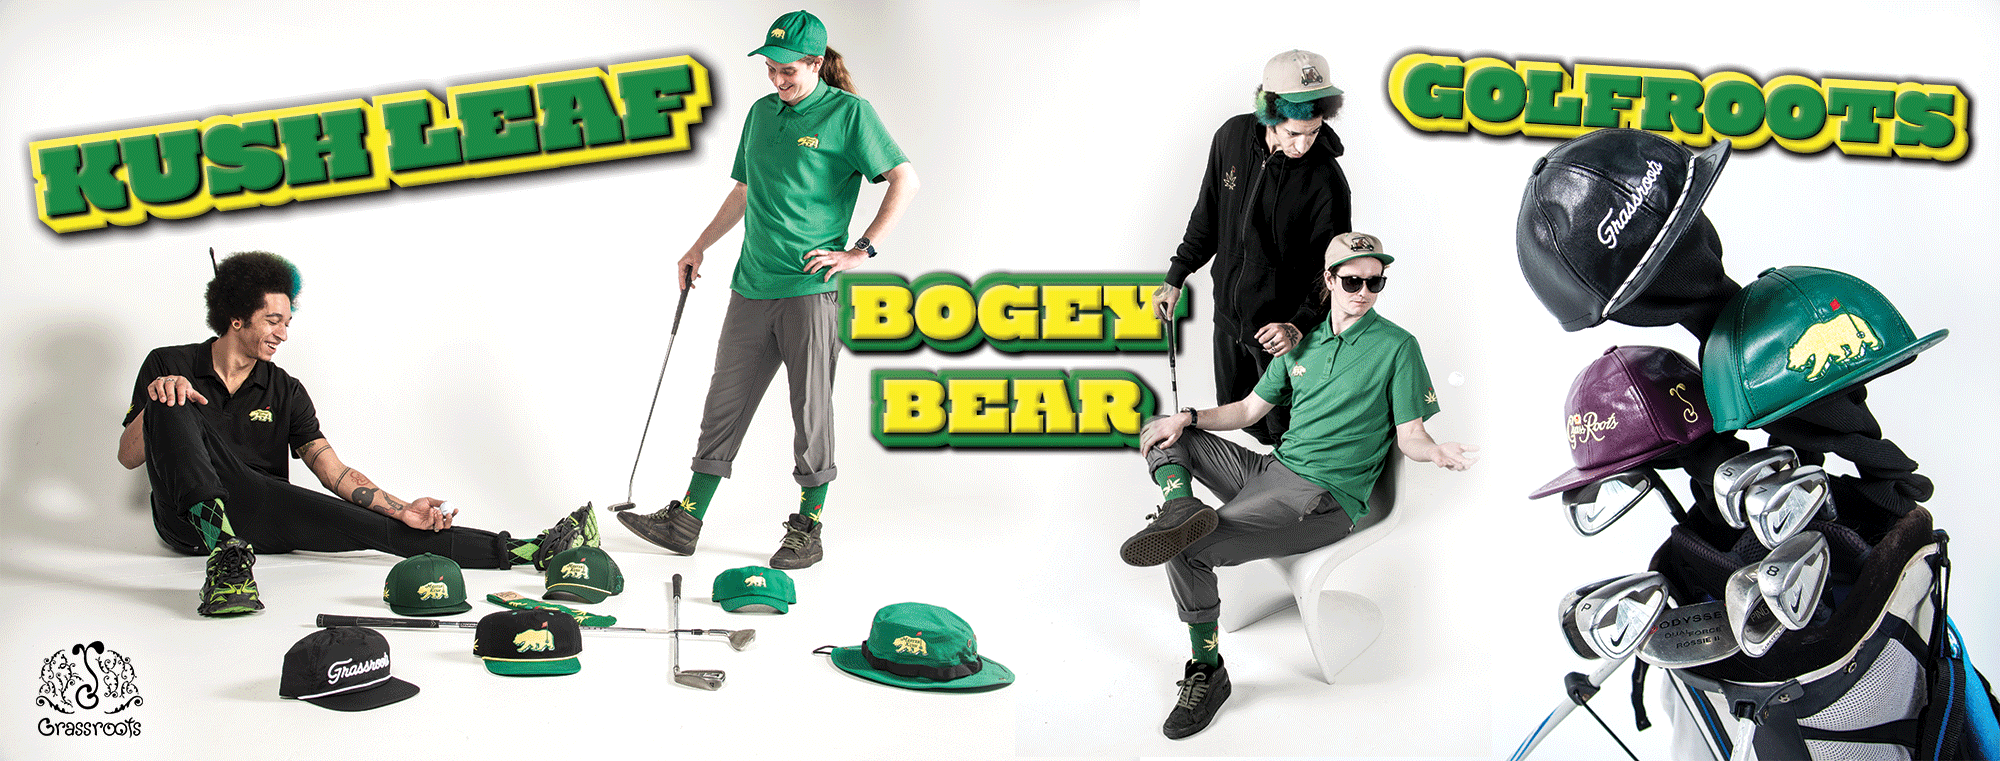 Bogey Bear Club Golf Tee – Bogey Bear Golf